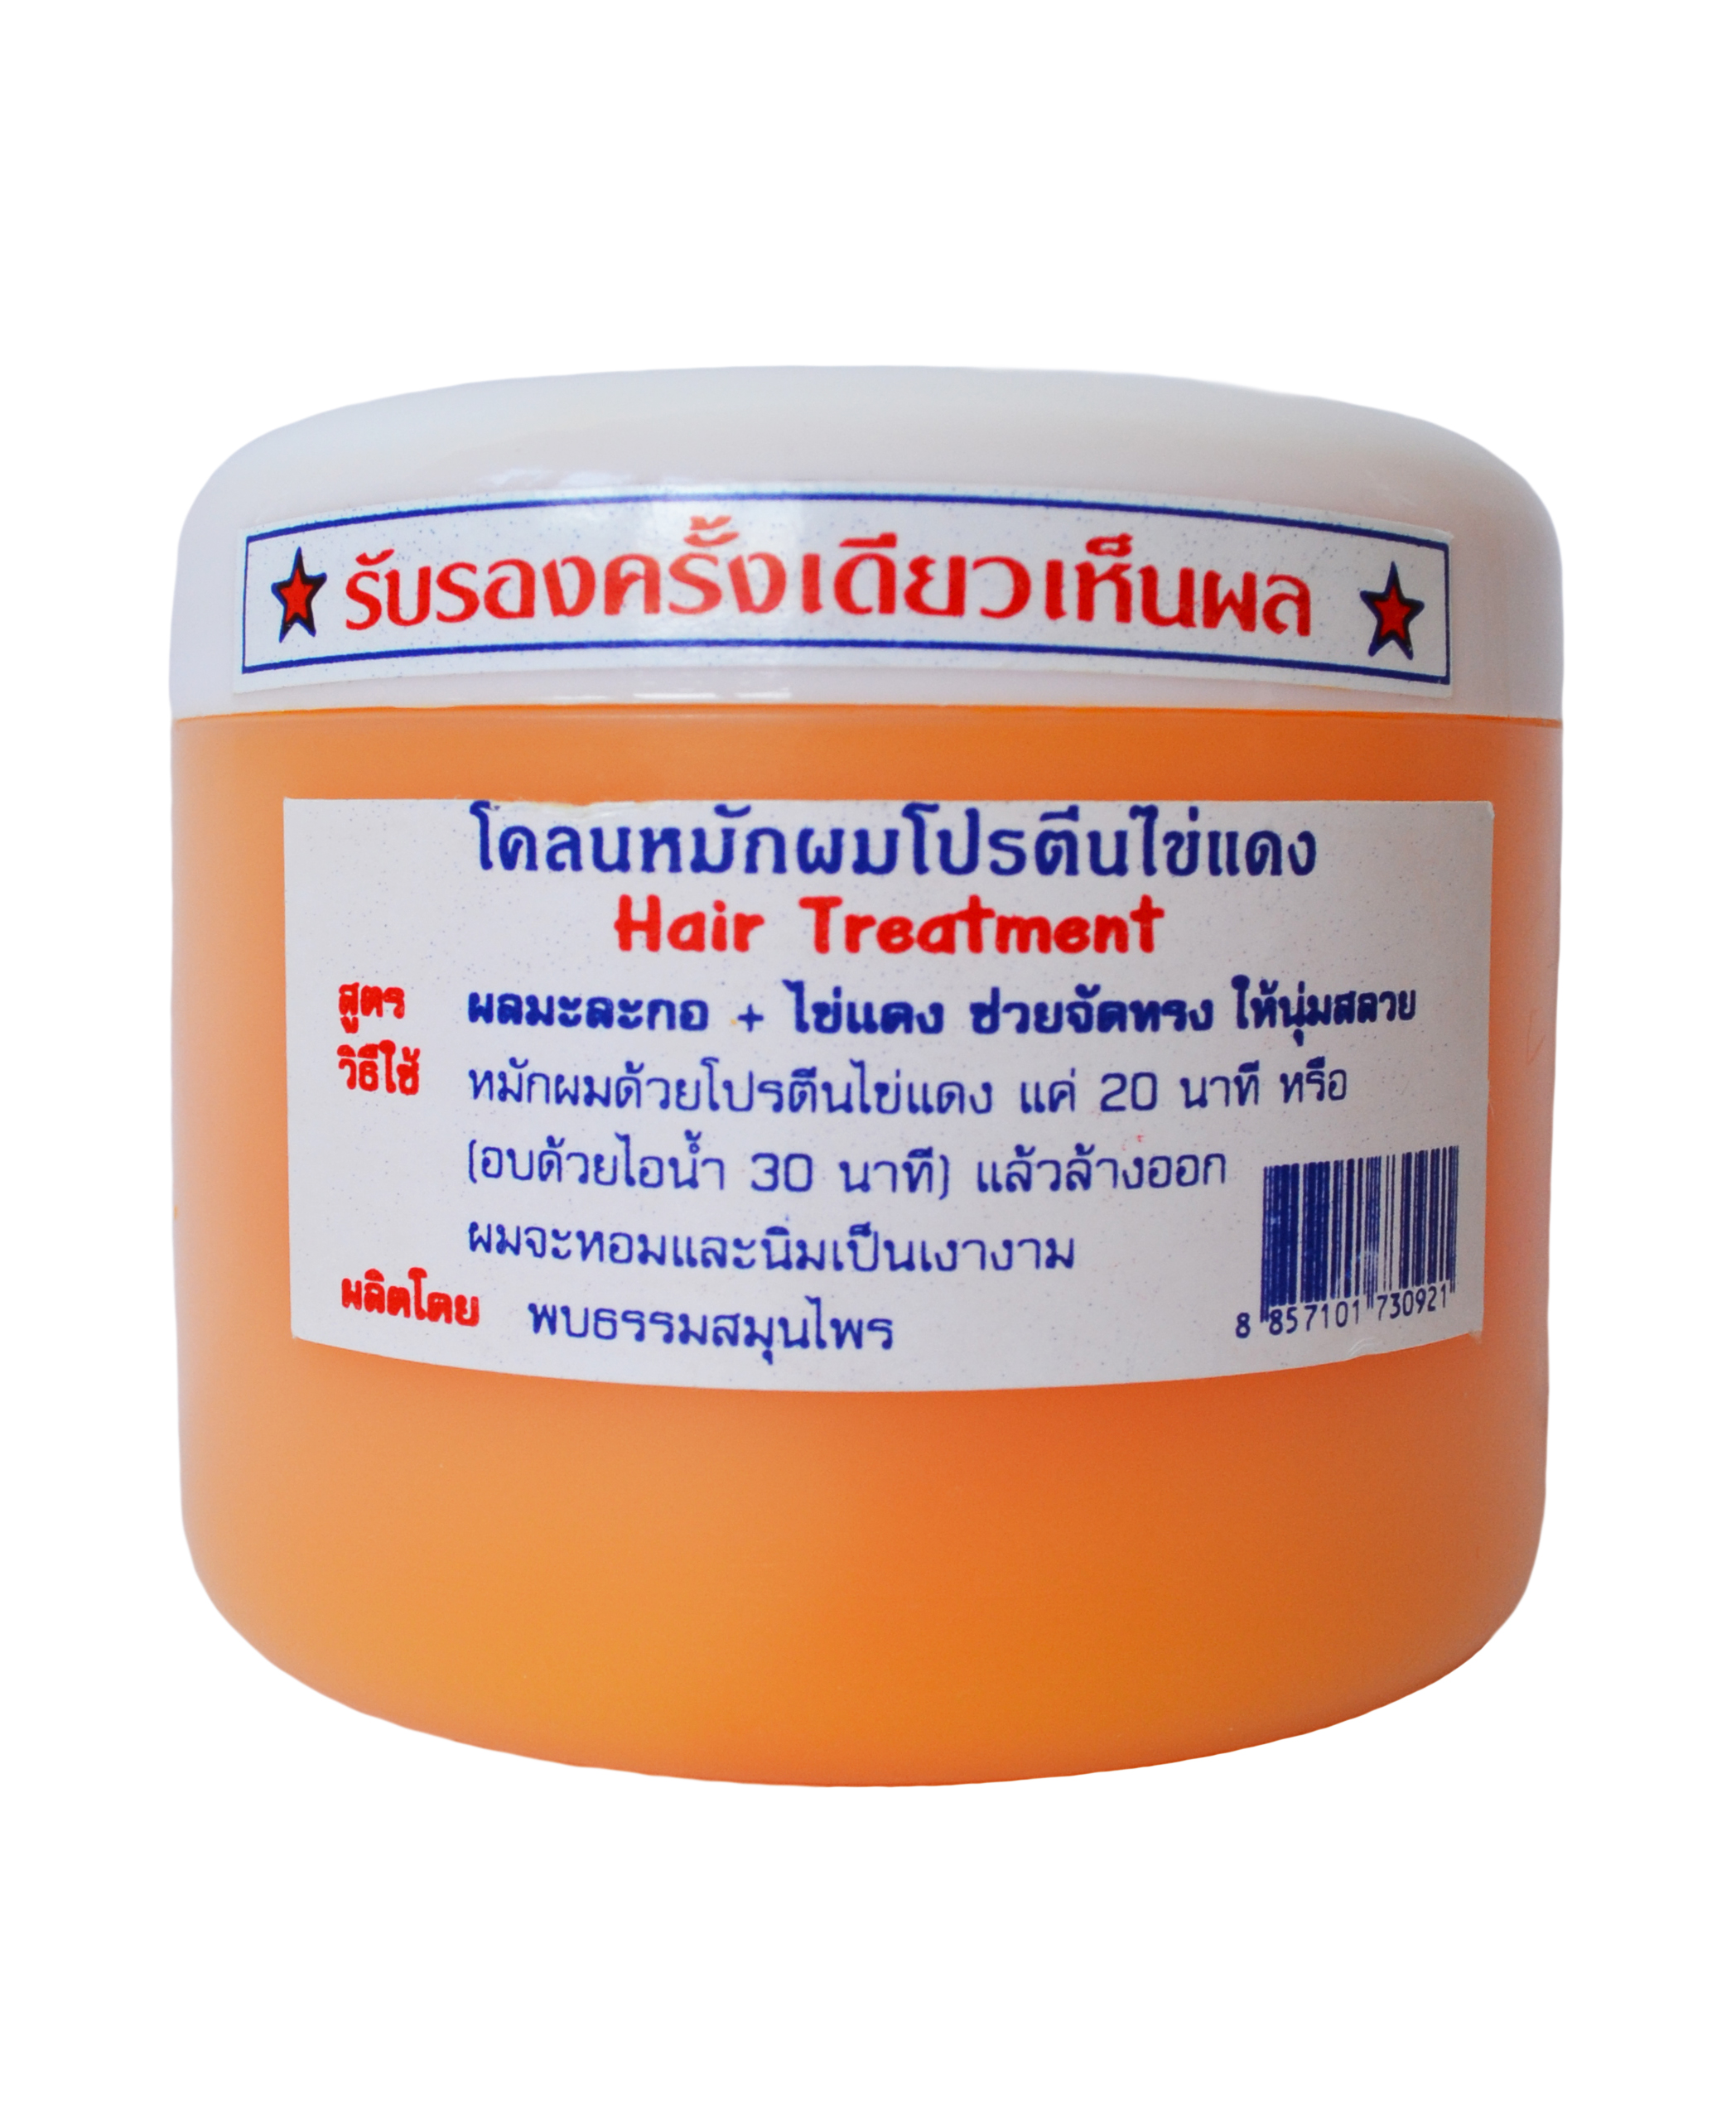 Натуральная восстанавливающая маска для волос Папайя и Яичный желток Palmy Nt Group 300 мл. Таиланд  Nt Group egg yolk hair treatment 300 ml. Thailand 100% Original Product from Thailand MADE IN THAILAND